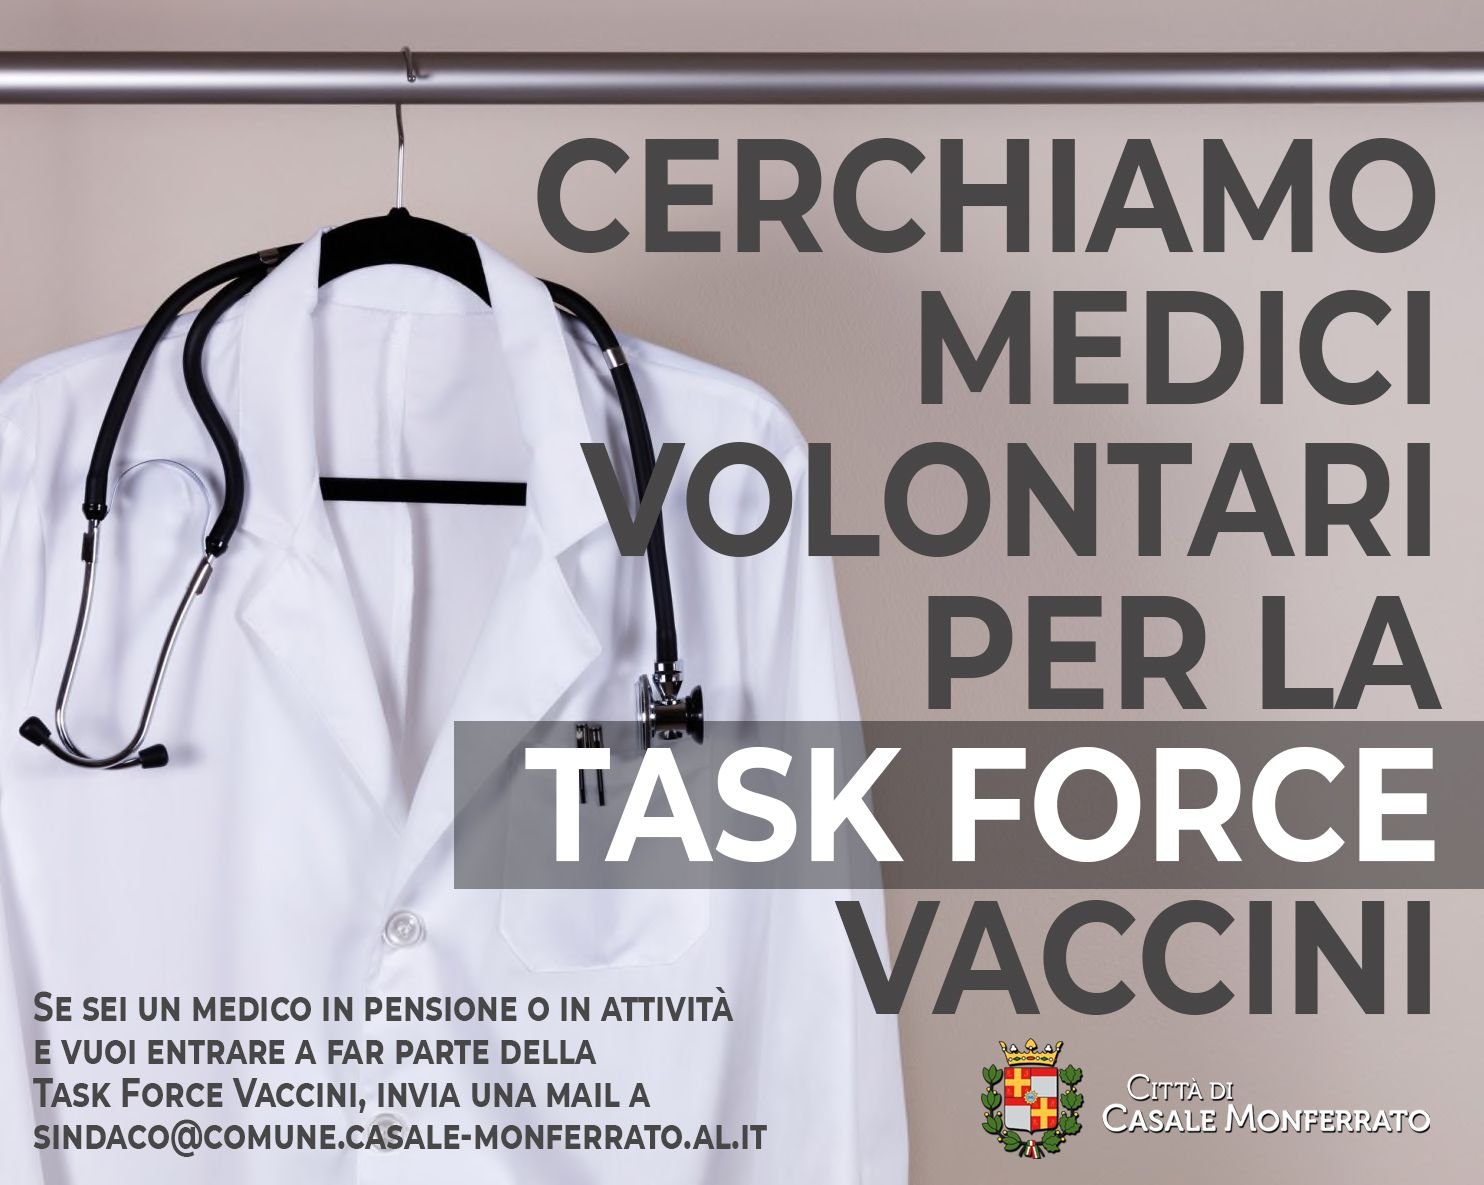 Covid, l’appello del sindaco di Casale: “Cerchiamo medici volontari per la task force vaccini”